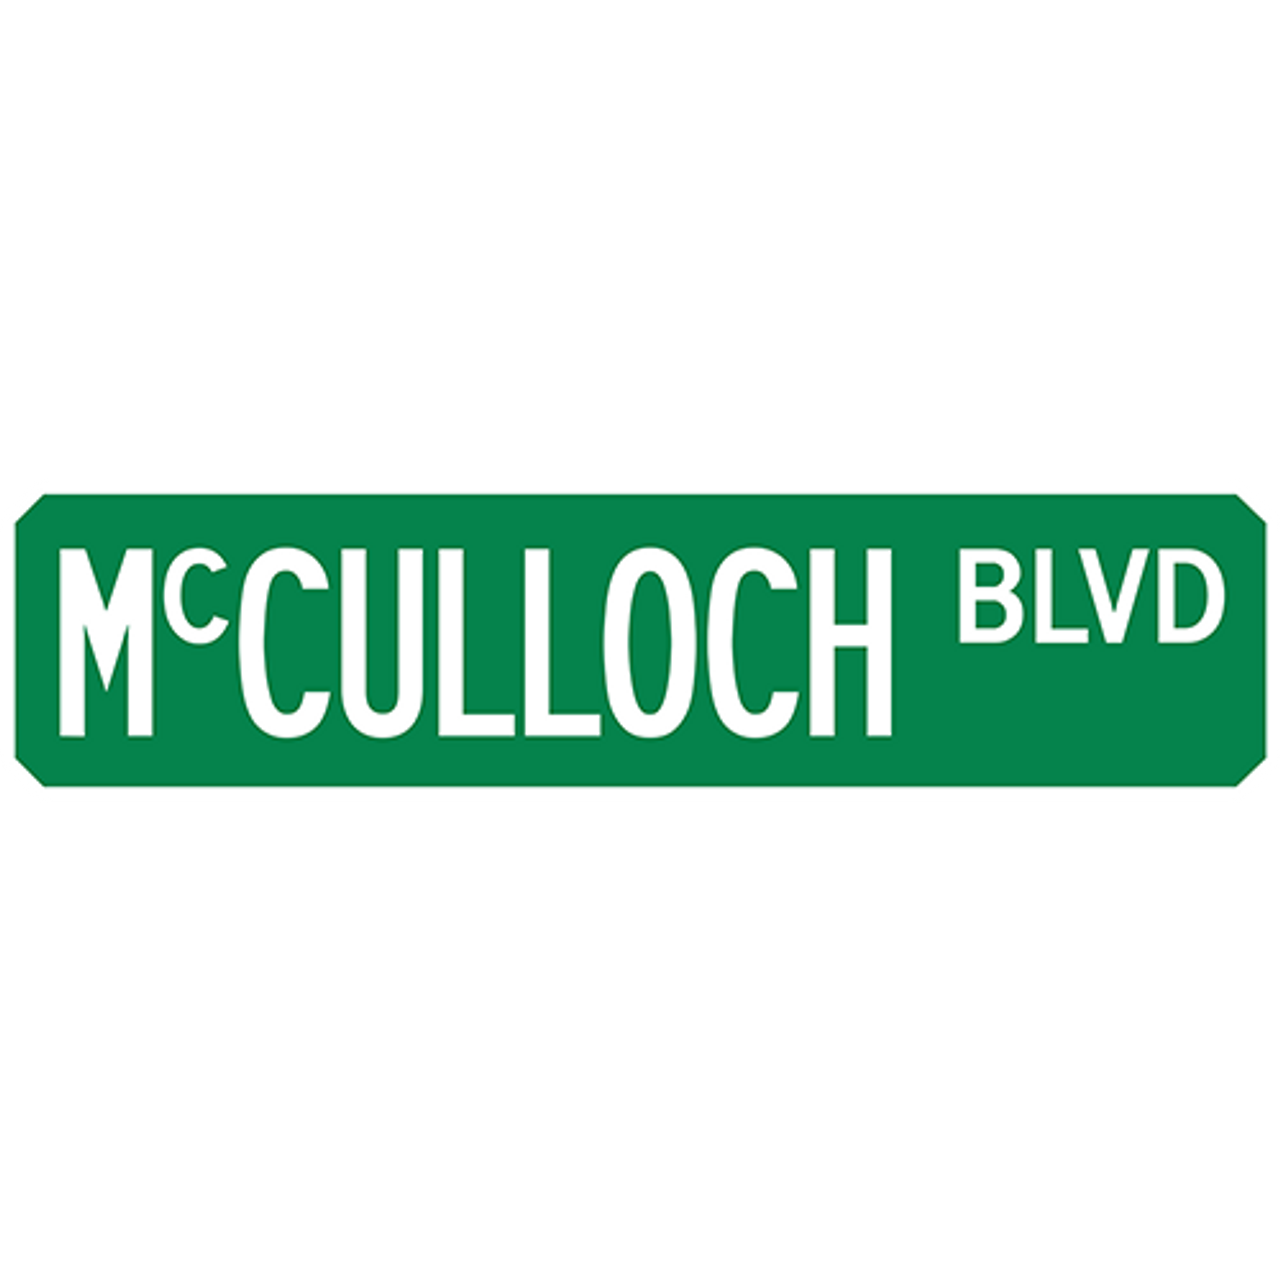 McCulloch Blvd Street Sign Muncie